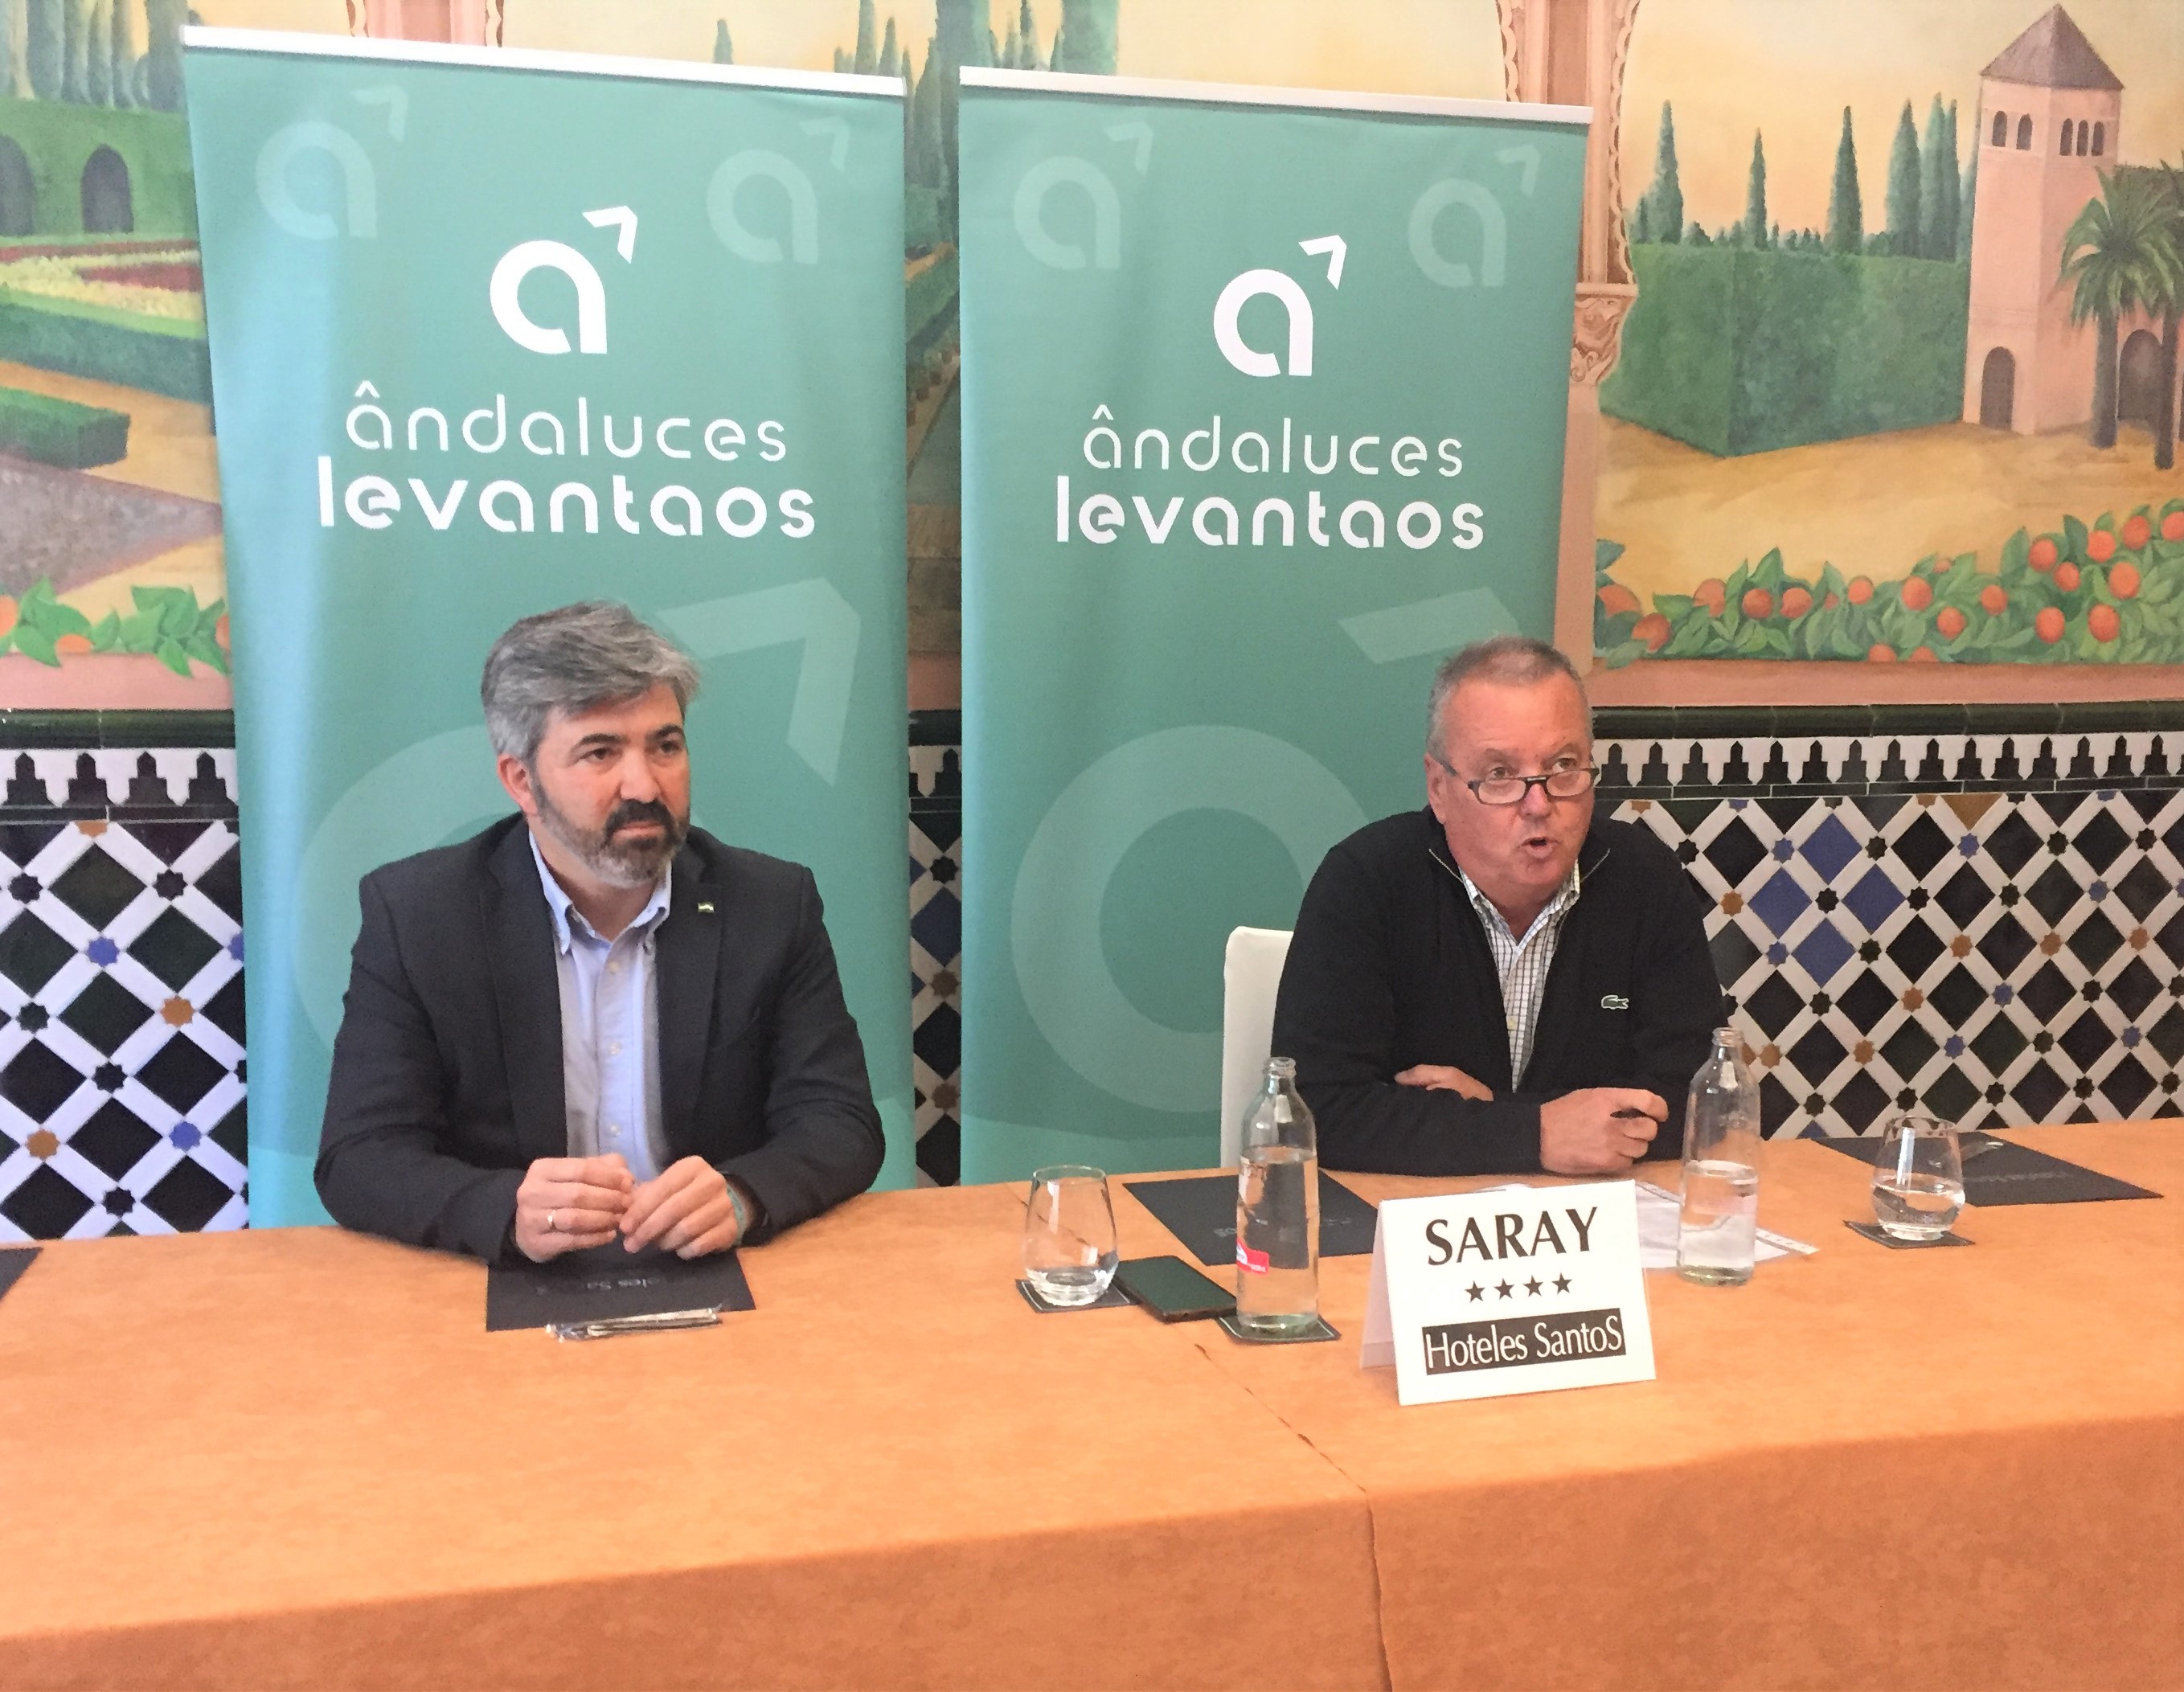 Convergencia Andaluza participará en el encuentro ‘Orgullo Andalucista’, que pretende impulsar el resurgir del andalucismo.